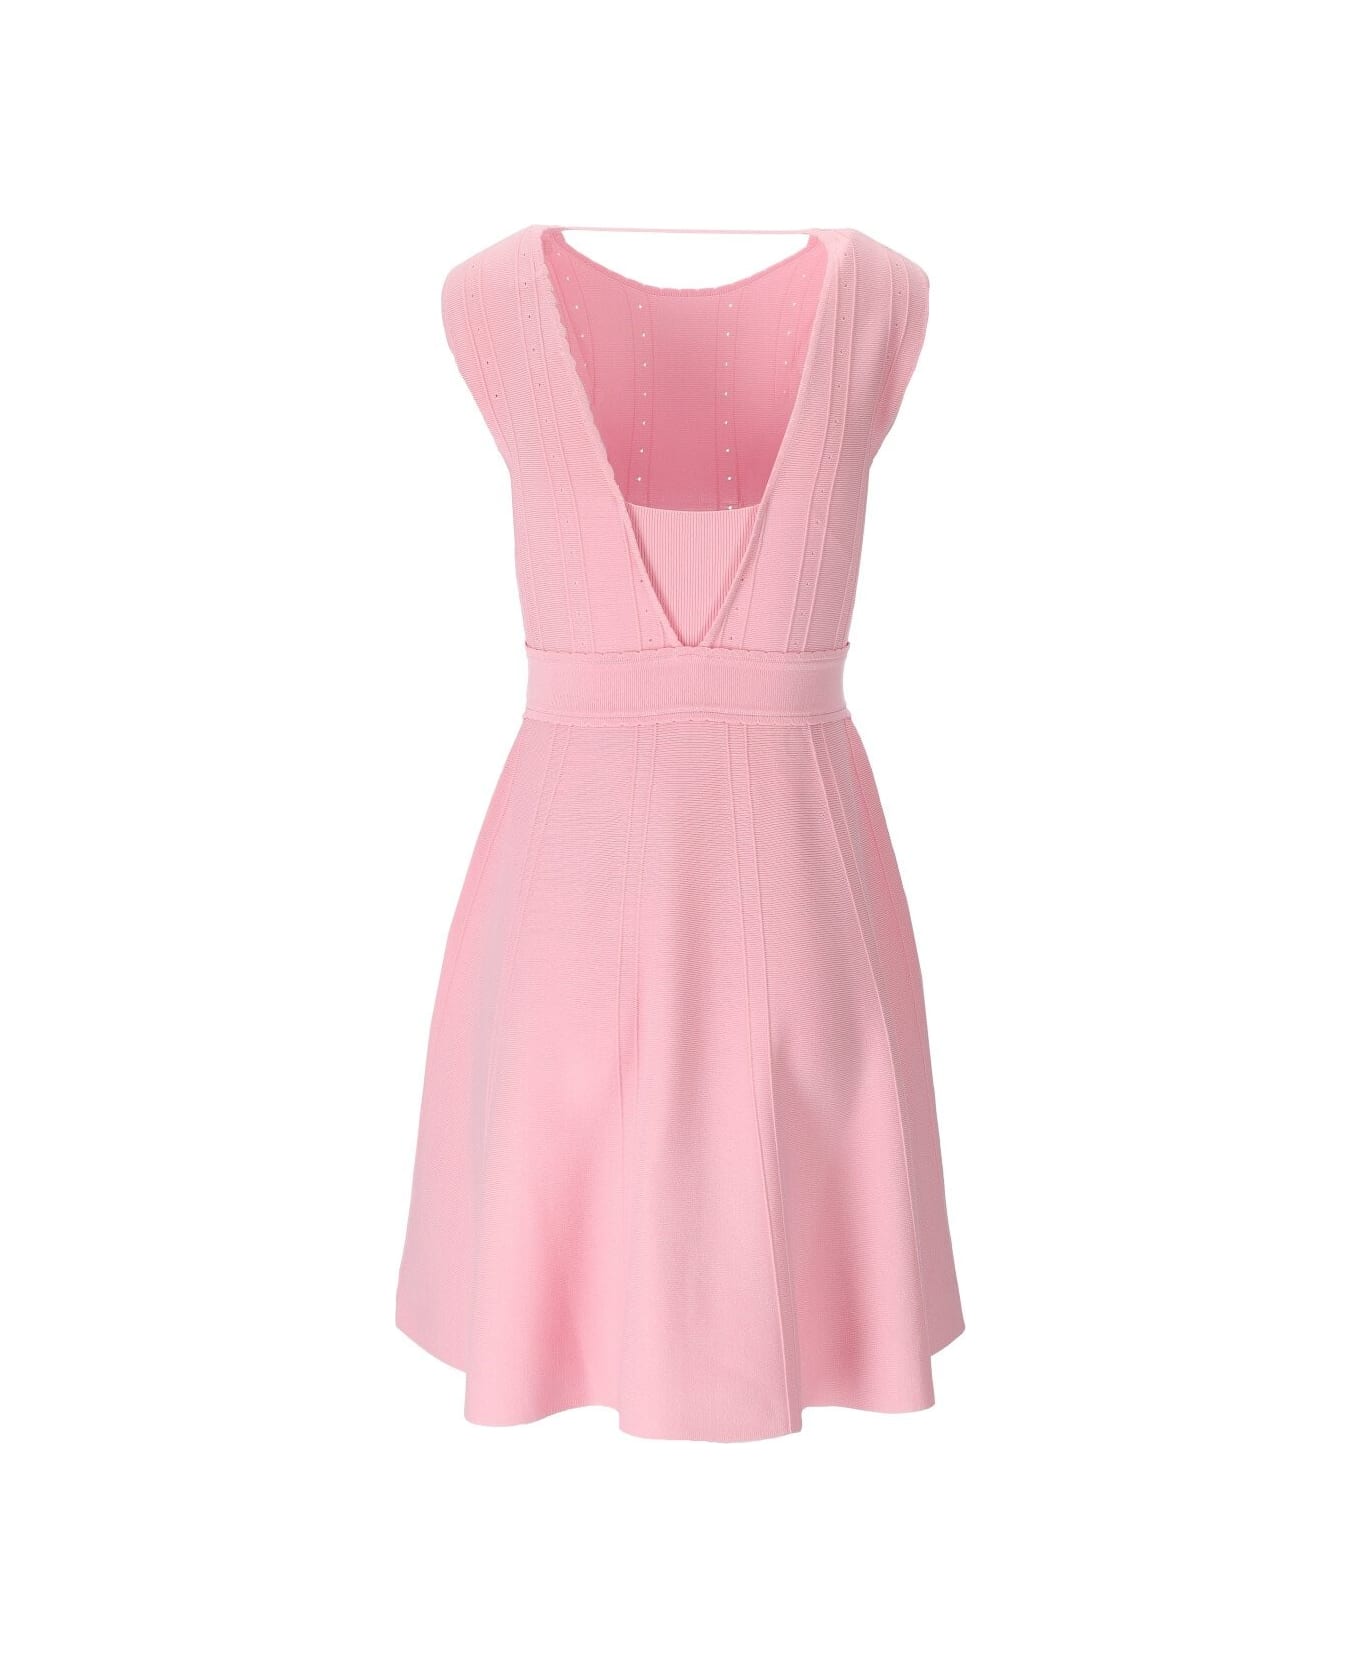 Blugirl Pink Knitted Dress Blugirl - PINK